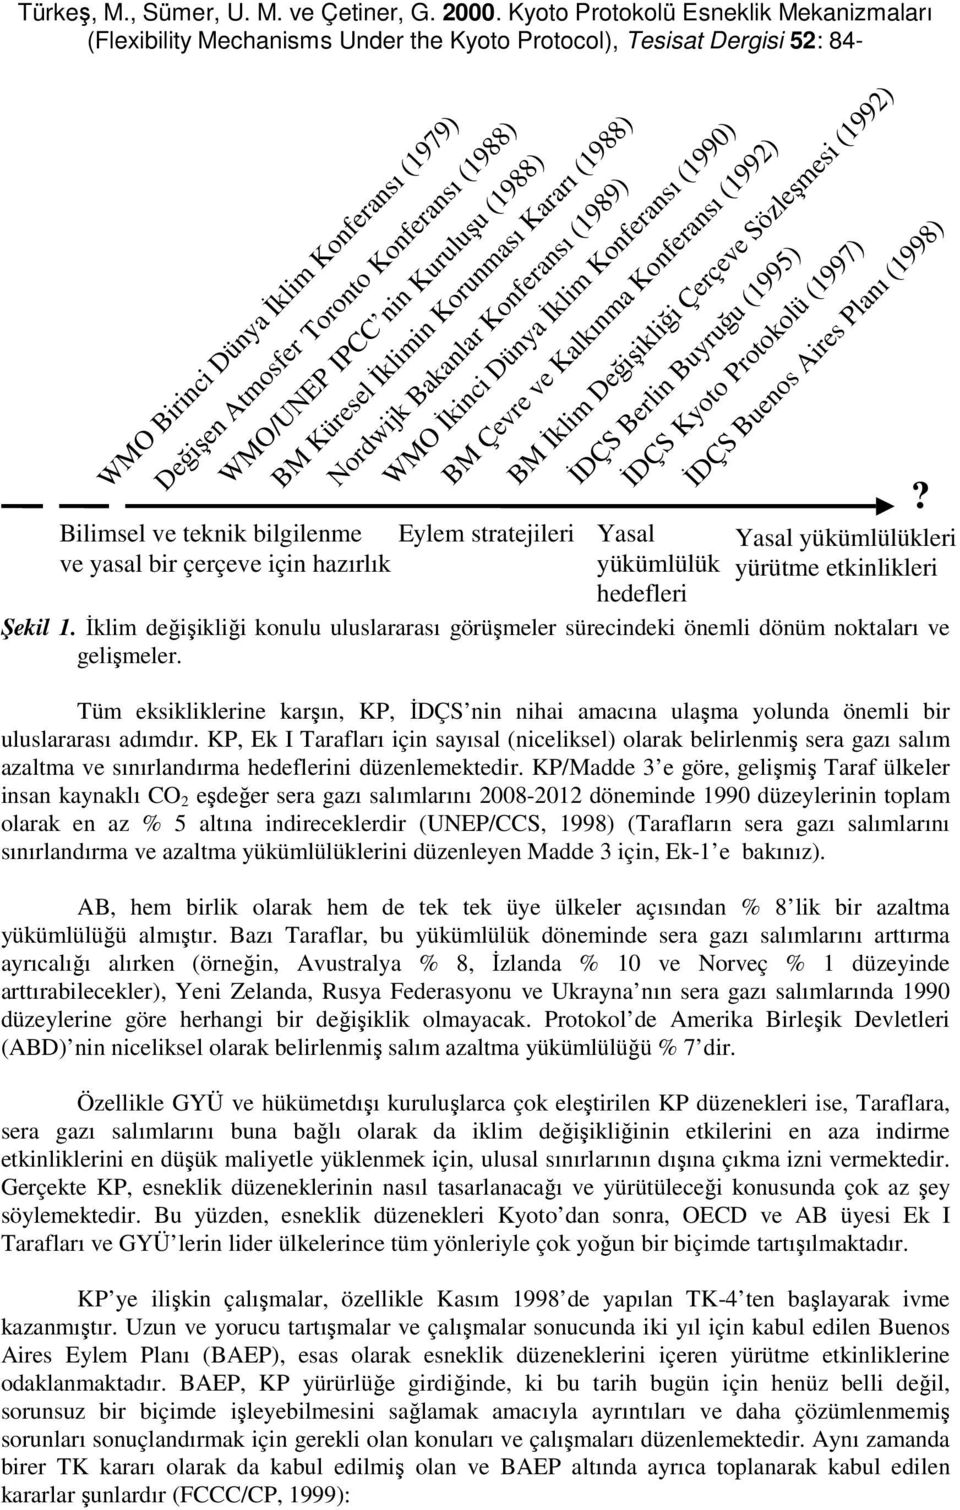 İDÇS Kyoto Protokolü (1997) İDÇS Buenos Aires Planı (1998) BM Çevre ve Kalkınma Konferansı (1992) Yasal yükümlülük? Yasal yükümlülükleri yürütme etkinlikleri hedefleri Şekil 1.